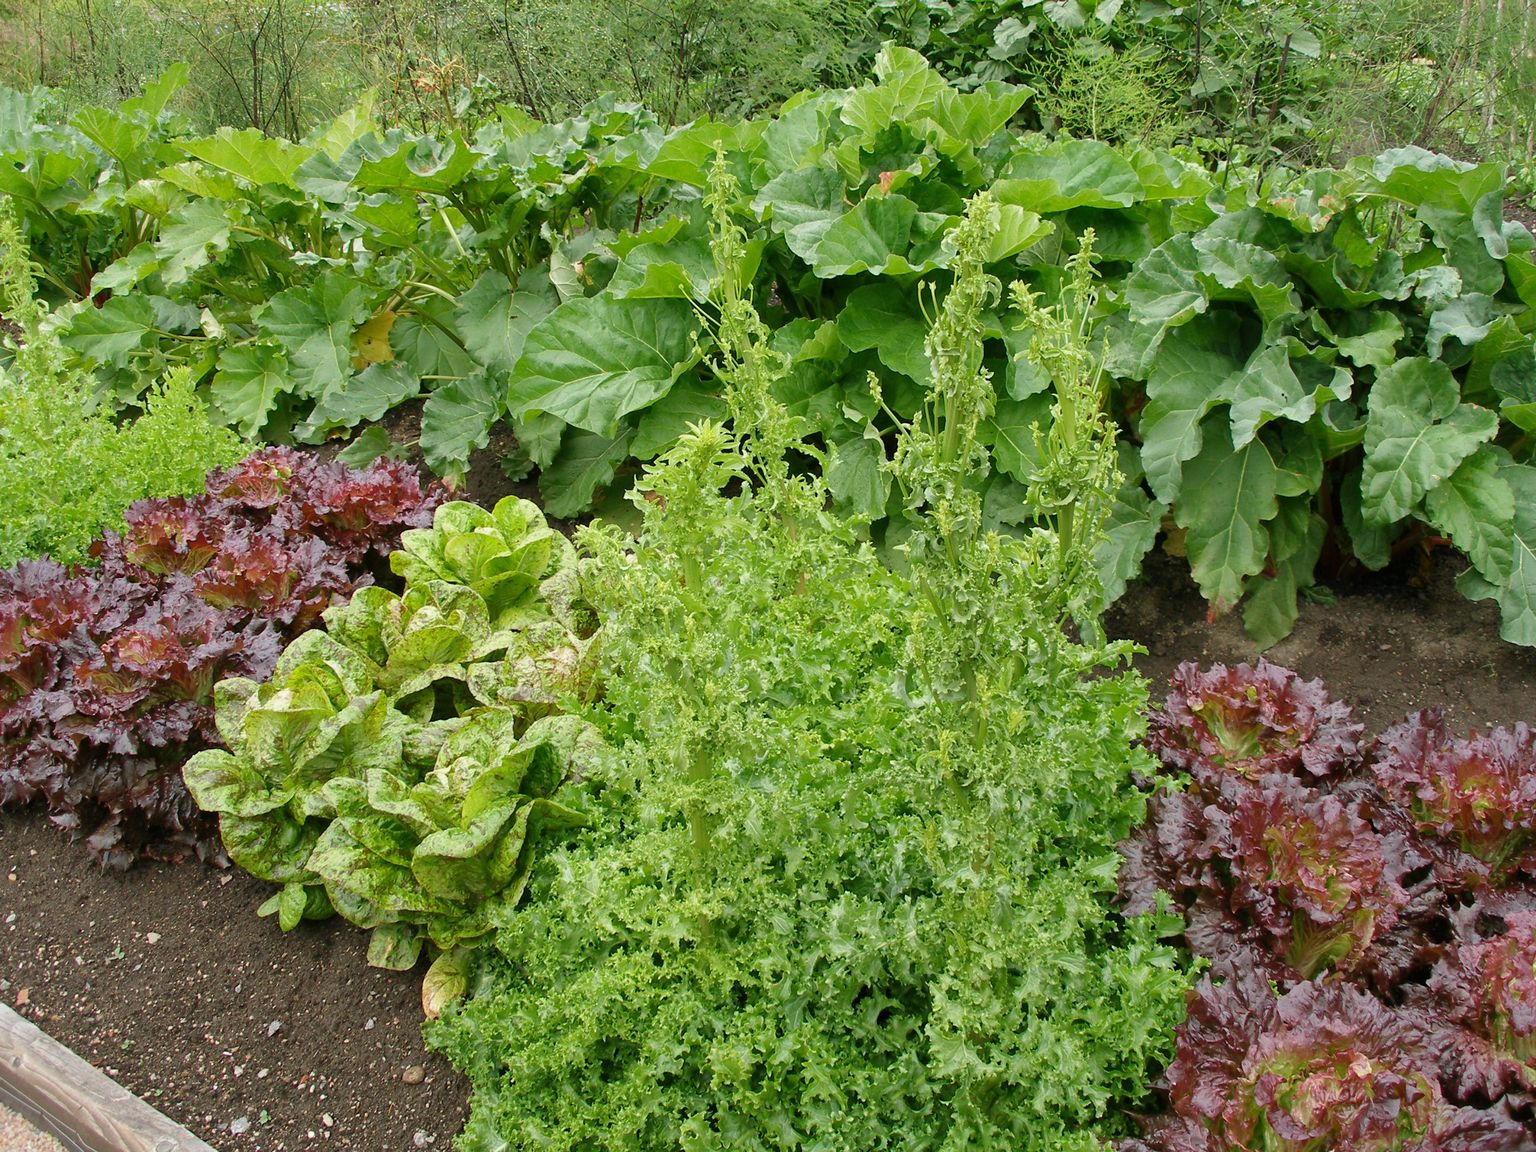 Väidetavalt ründavad teod punaseid salatisorte vähem. Kui salat kipub üle kasvama, siis saate selle ära kasutada tervislikes rohelistes smuutides.